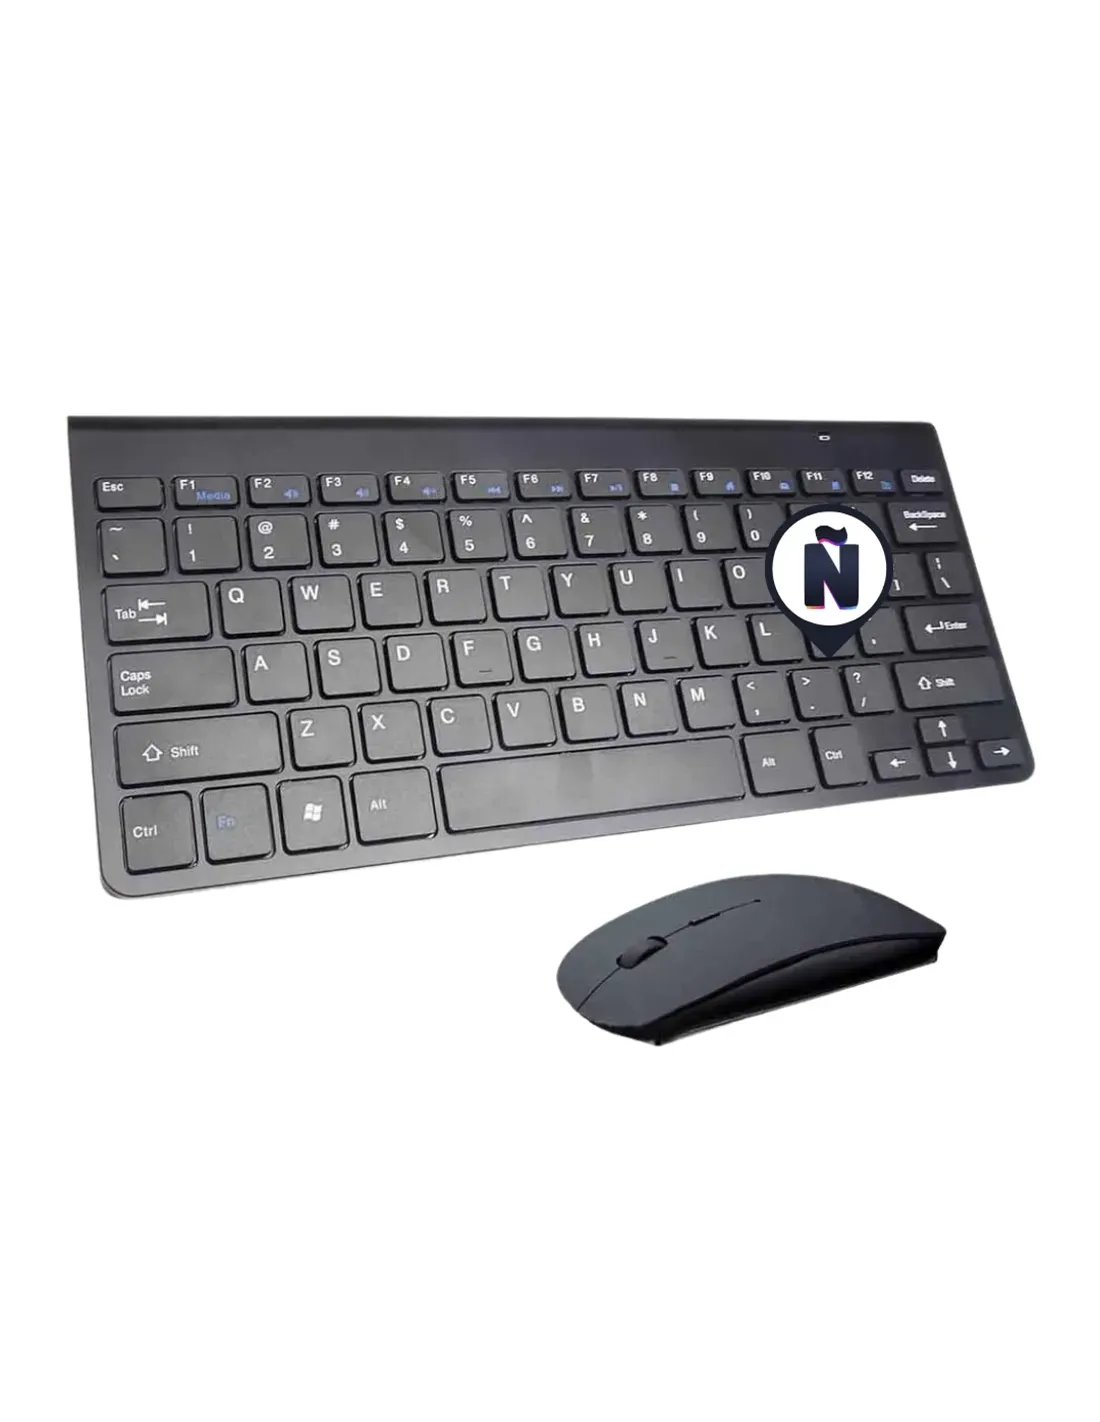  Teclado y mouse inalámbricos, teclado blanco con soporte para  teléfono, combo de teclado inalámbrico USB silencioso de 2.4 GHz, teclado y  mouse de tamaño completo para computadora, escritorio y portátil (blanco) 